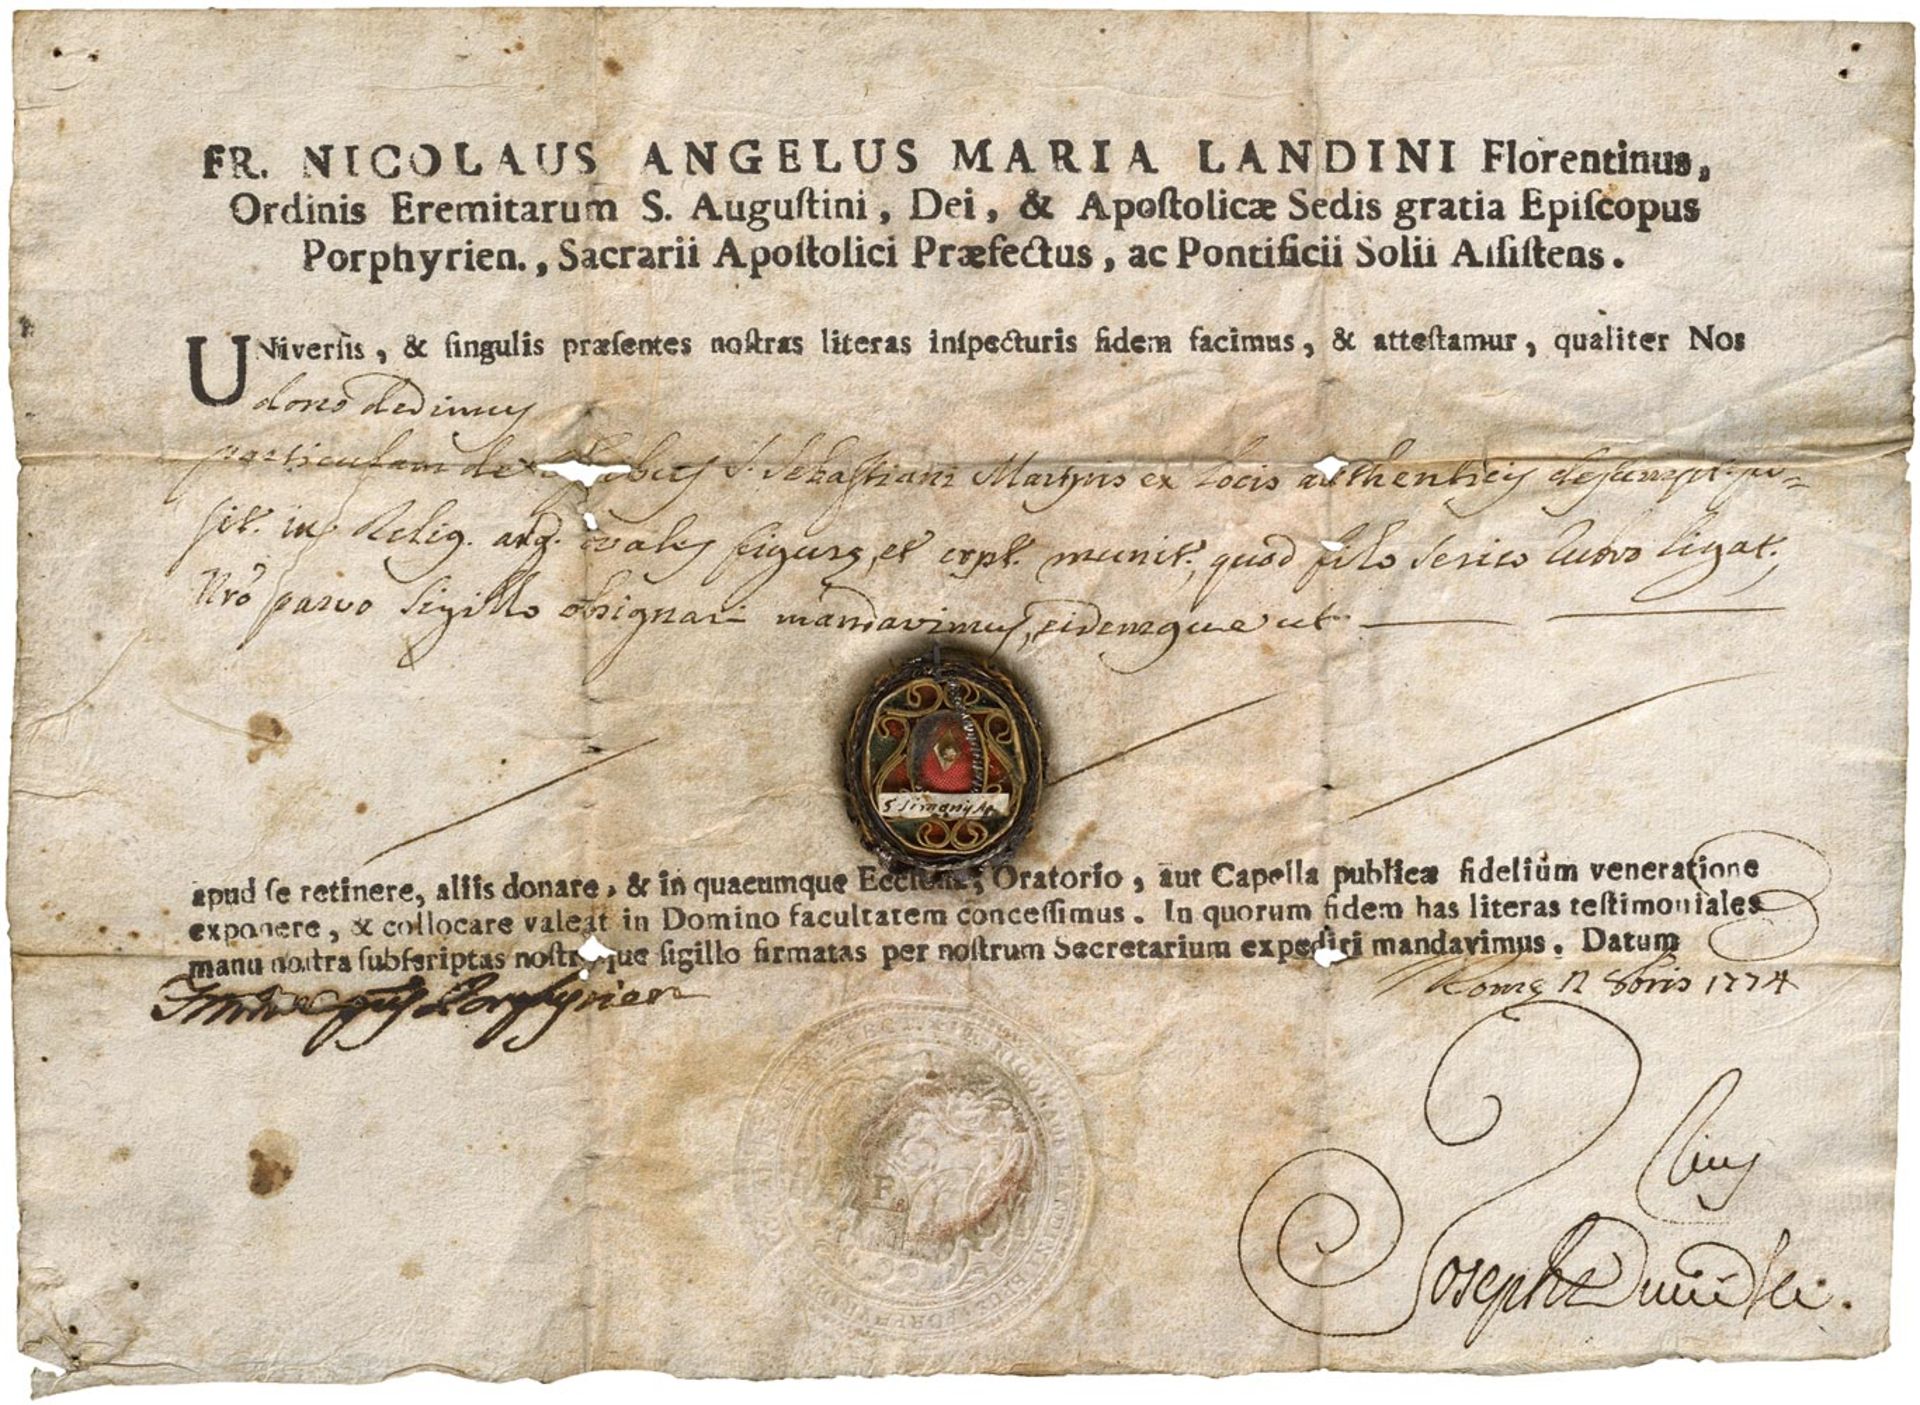 Landini, Nicolaus Angelus Maria: Reliquienzertifikat mit eigenhändiger Unterschrift und